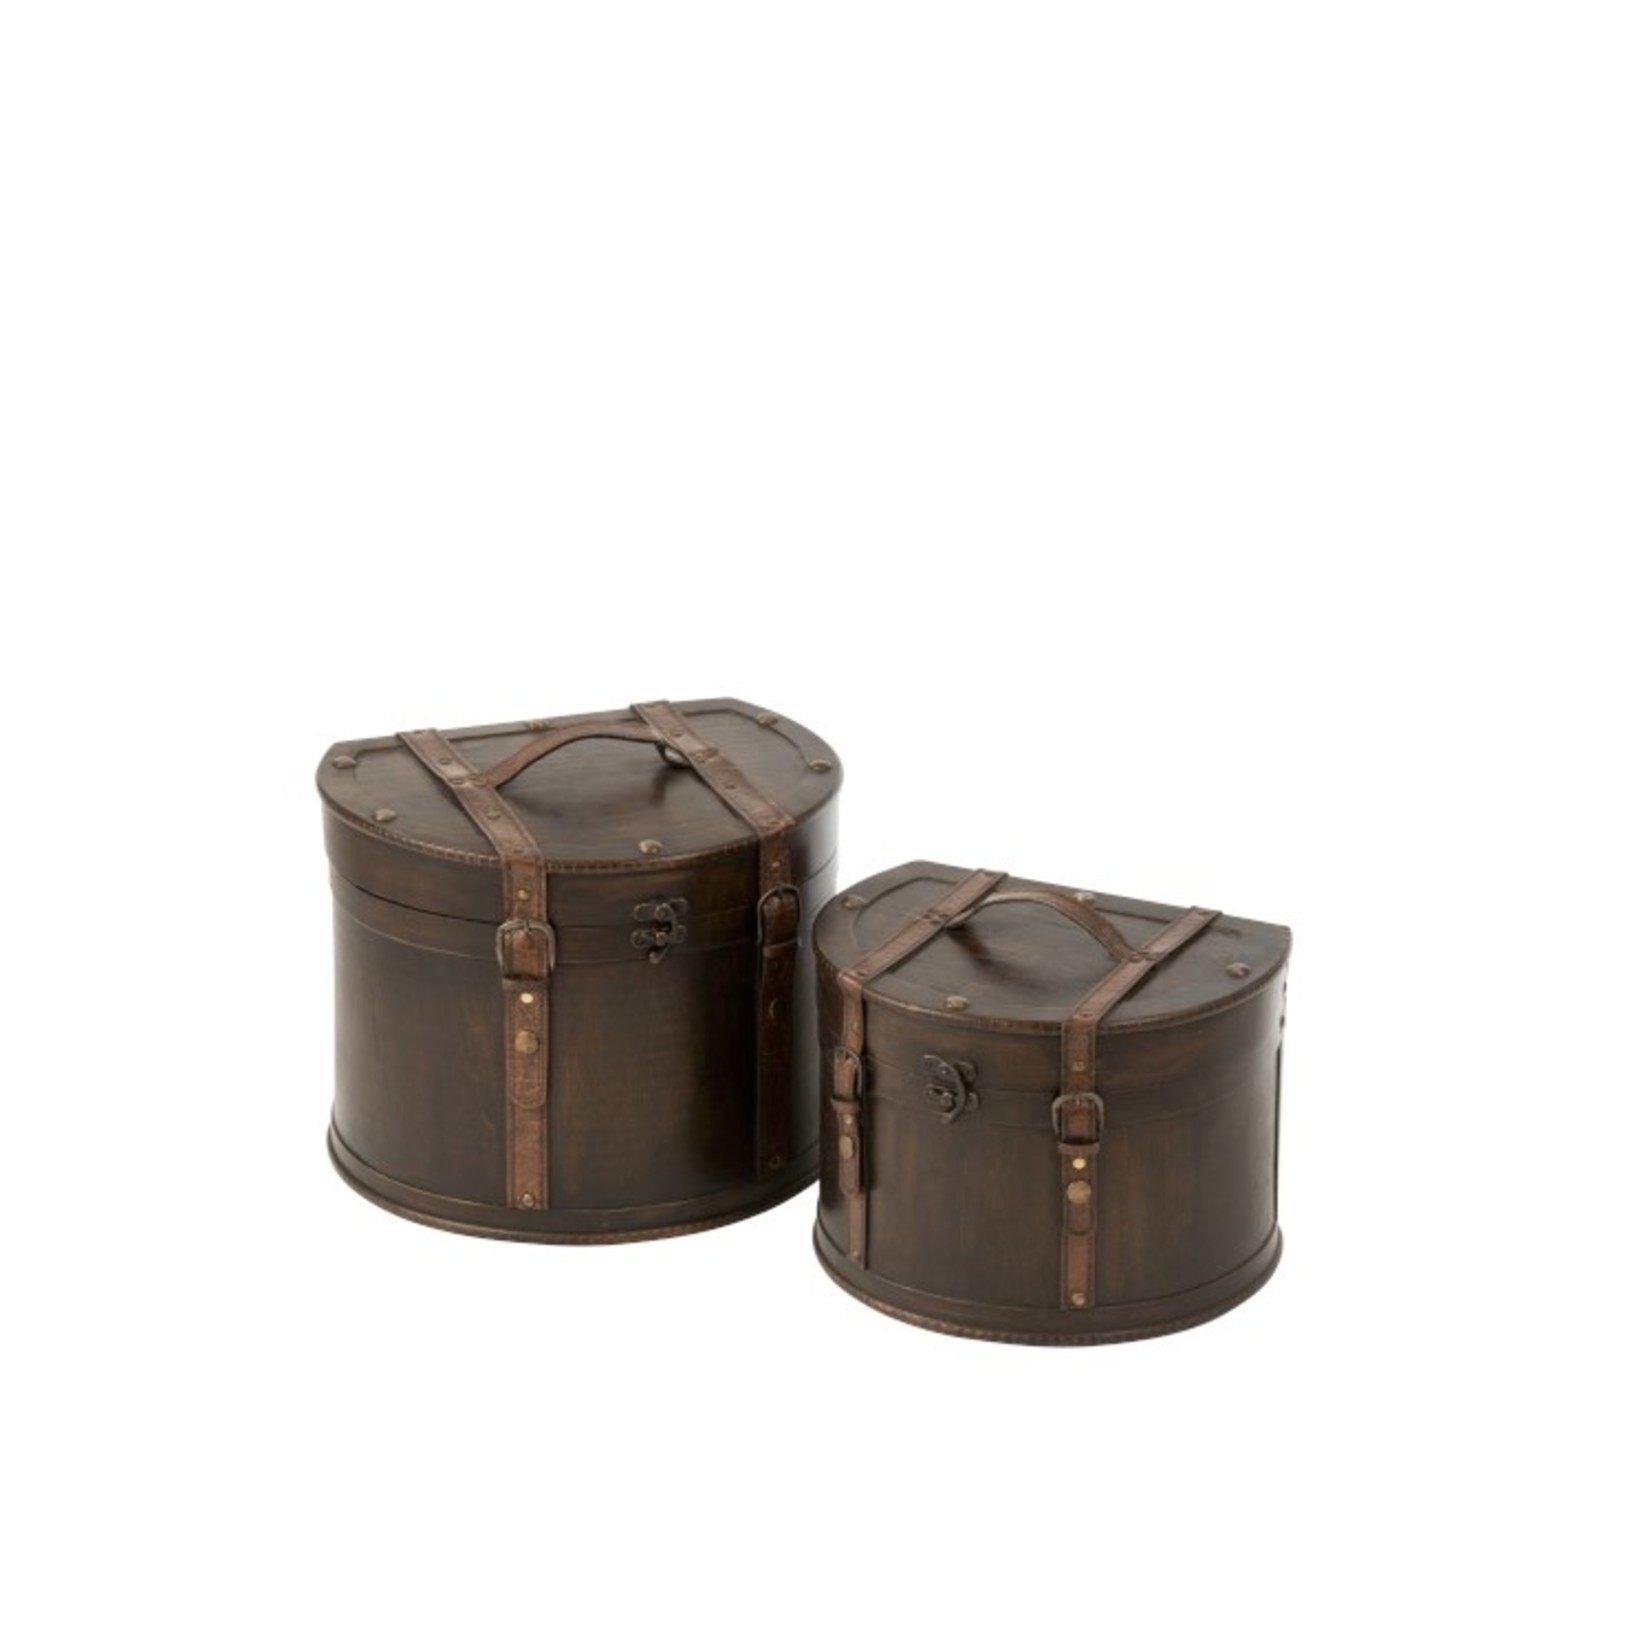 J-Line Decoration Storage Cases Round Flat Side Wood - Dark Brown